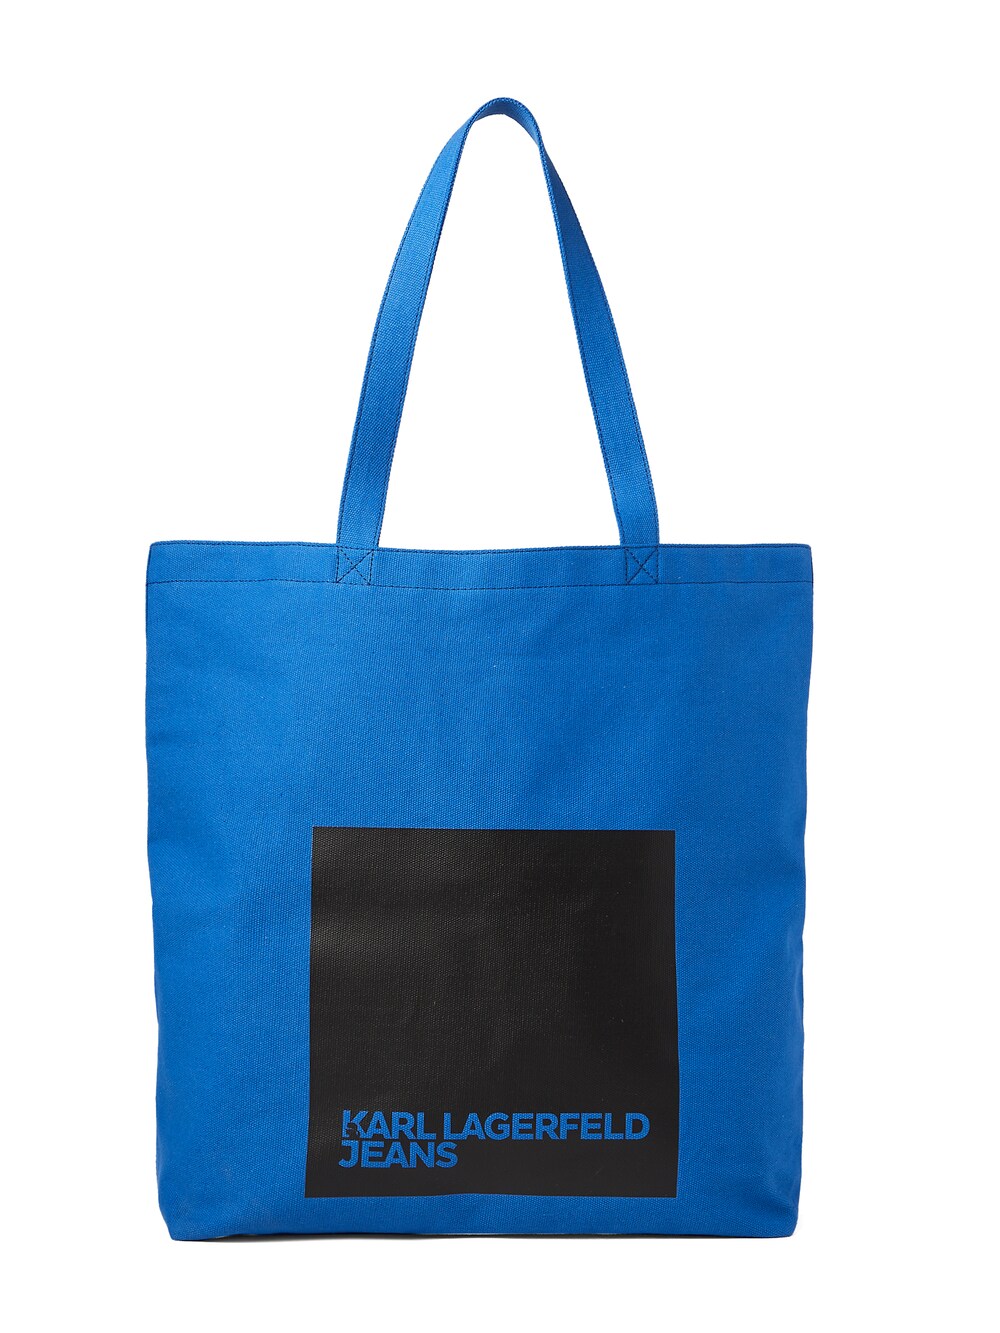 бермуды karl lagerfeld размер 32 синий Сумка-шоппер KARL LAGERFELD JEANS, синий